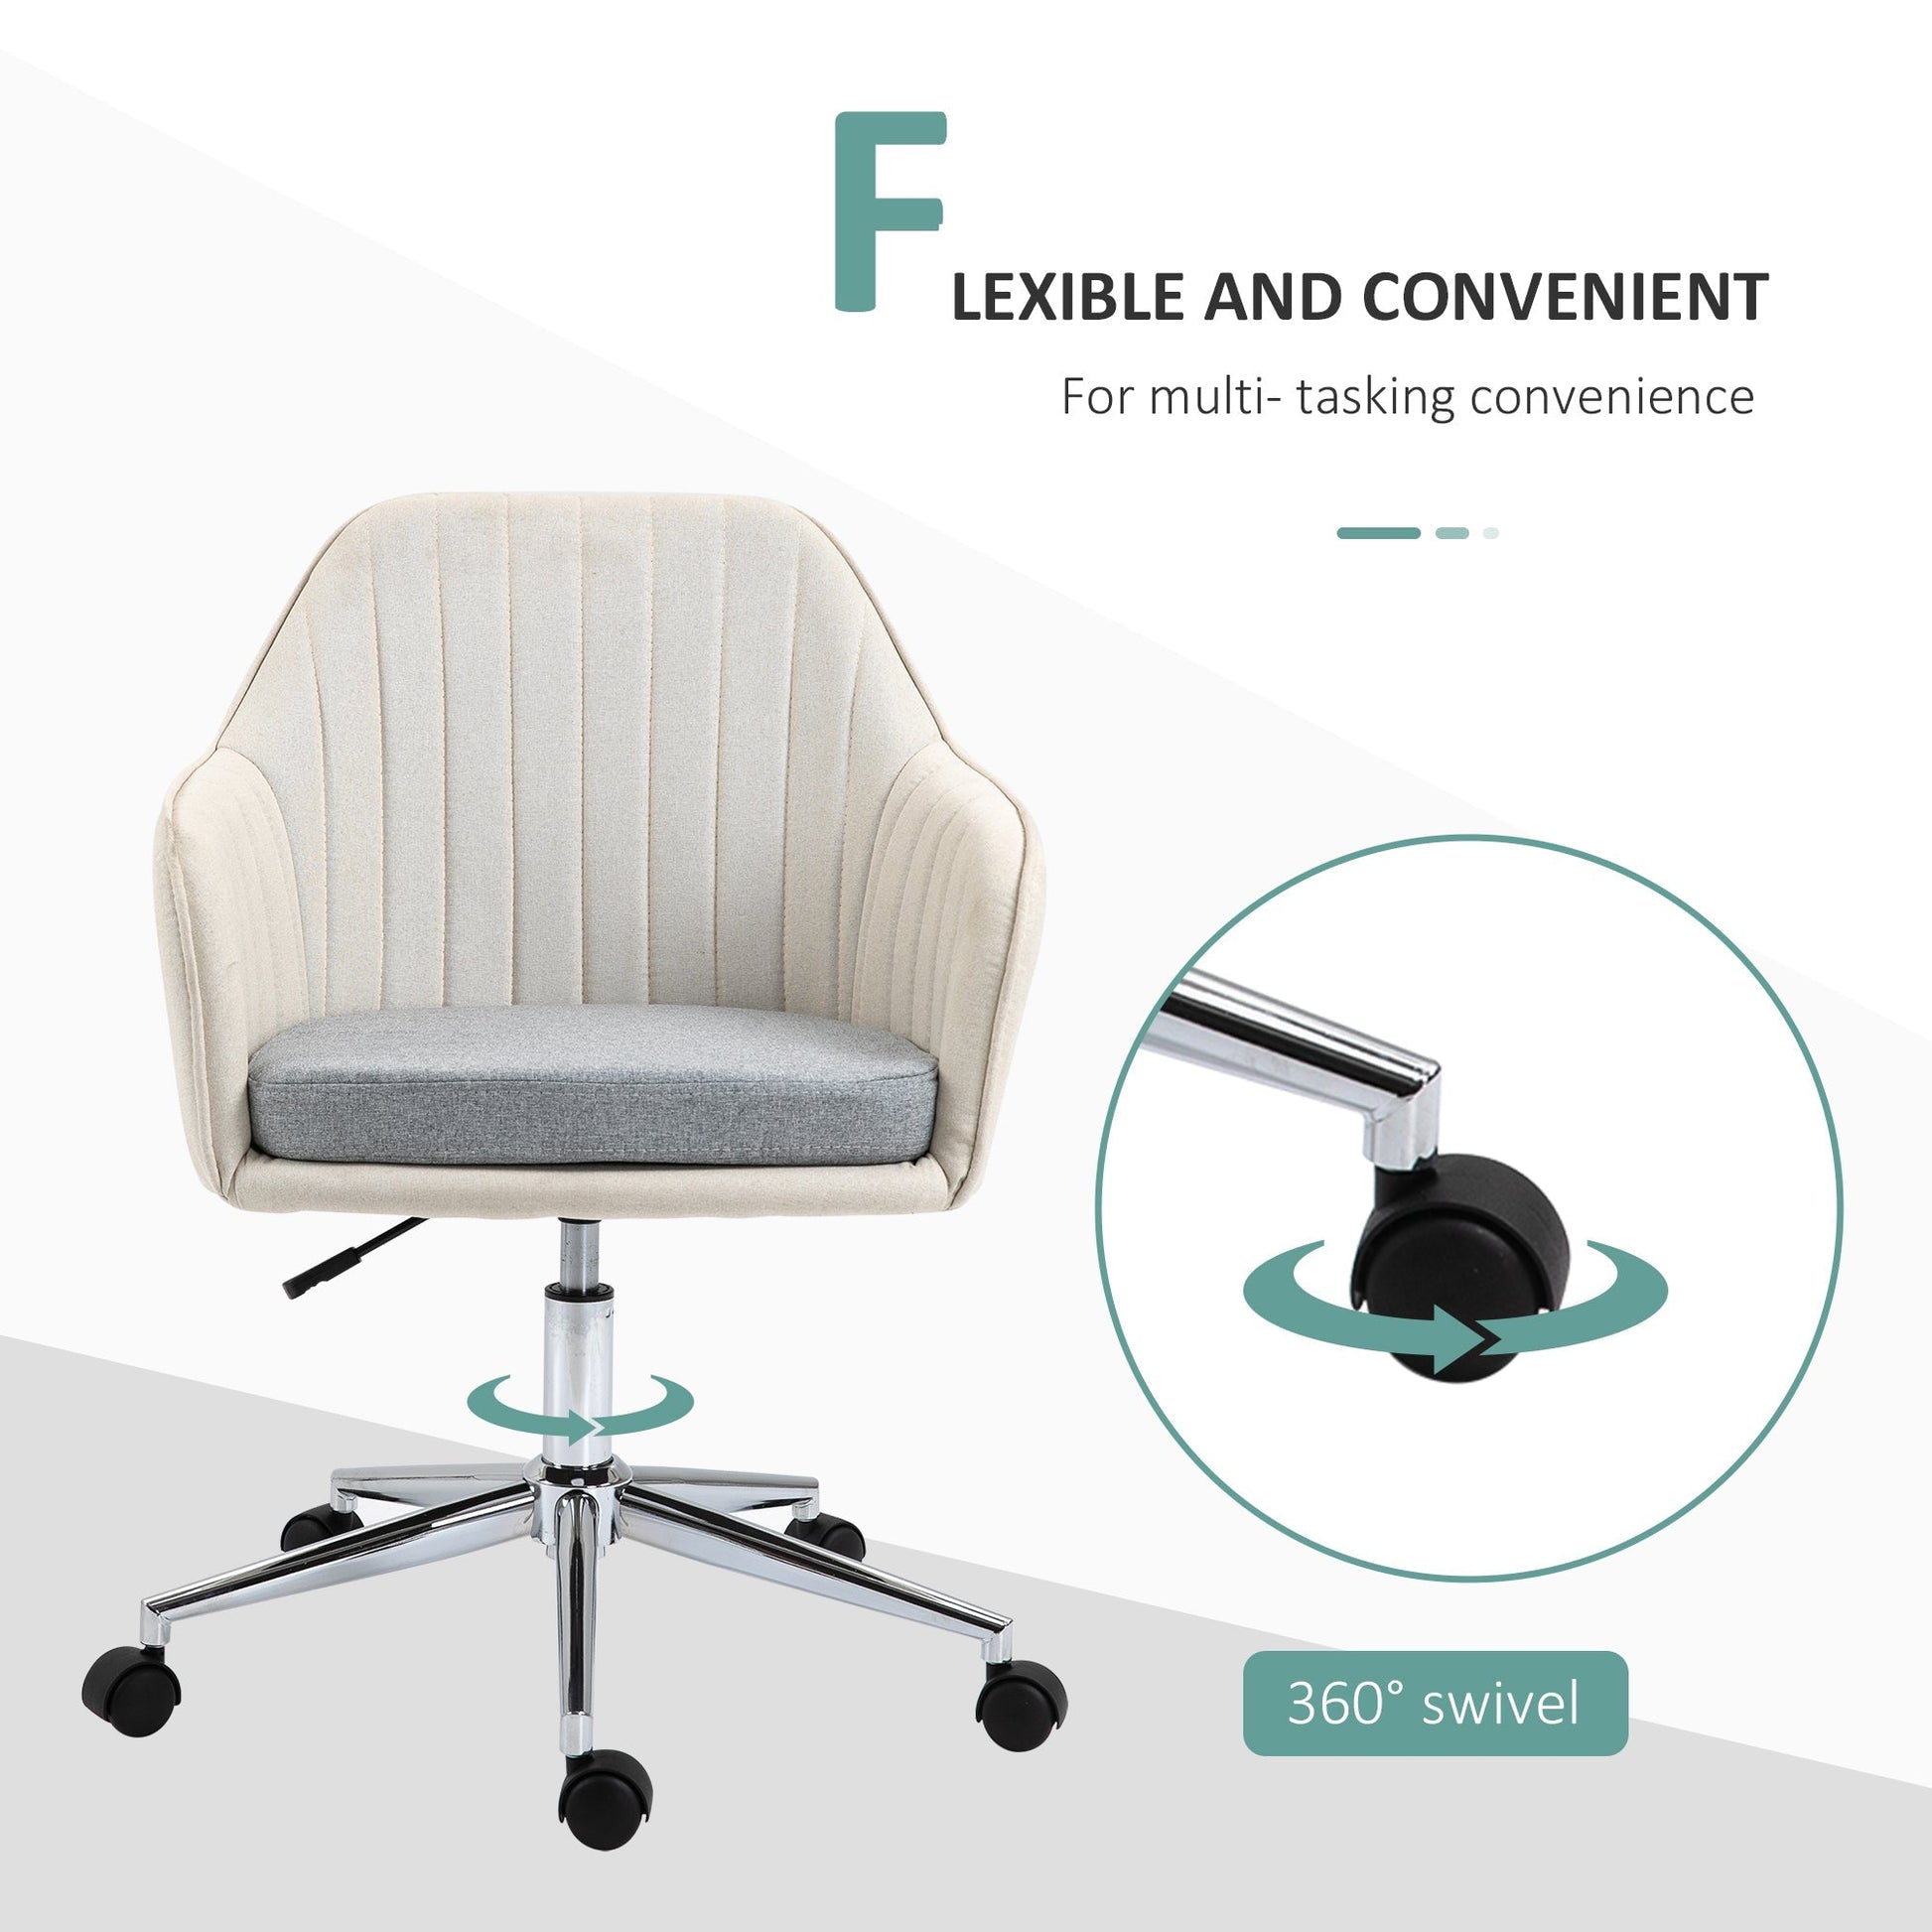 ProperAV Leisure Linen Fabric Swivel Scallop Shape Office Chair with Wheels - Beige - maplin.co.uk